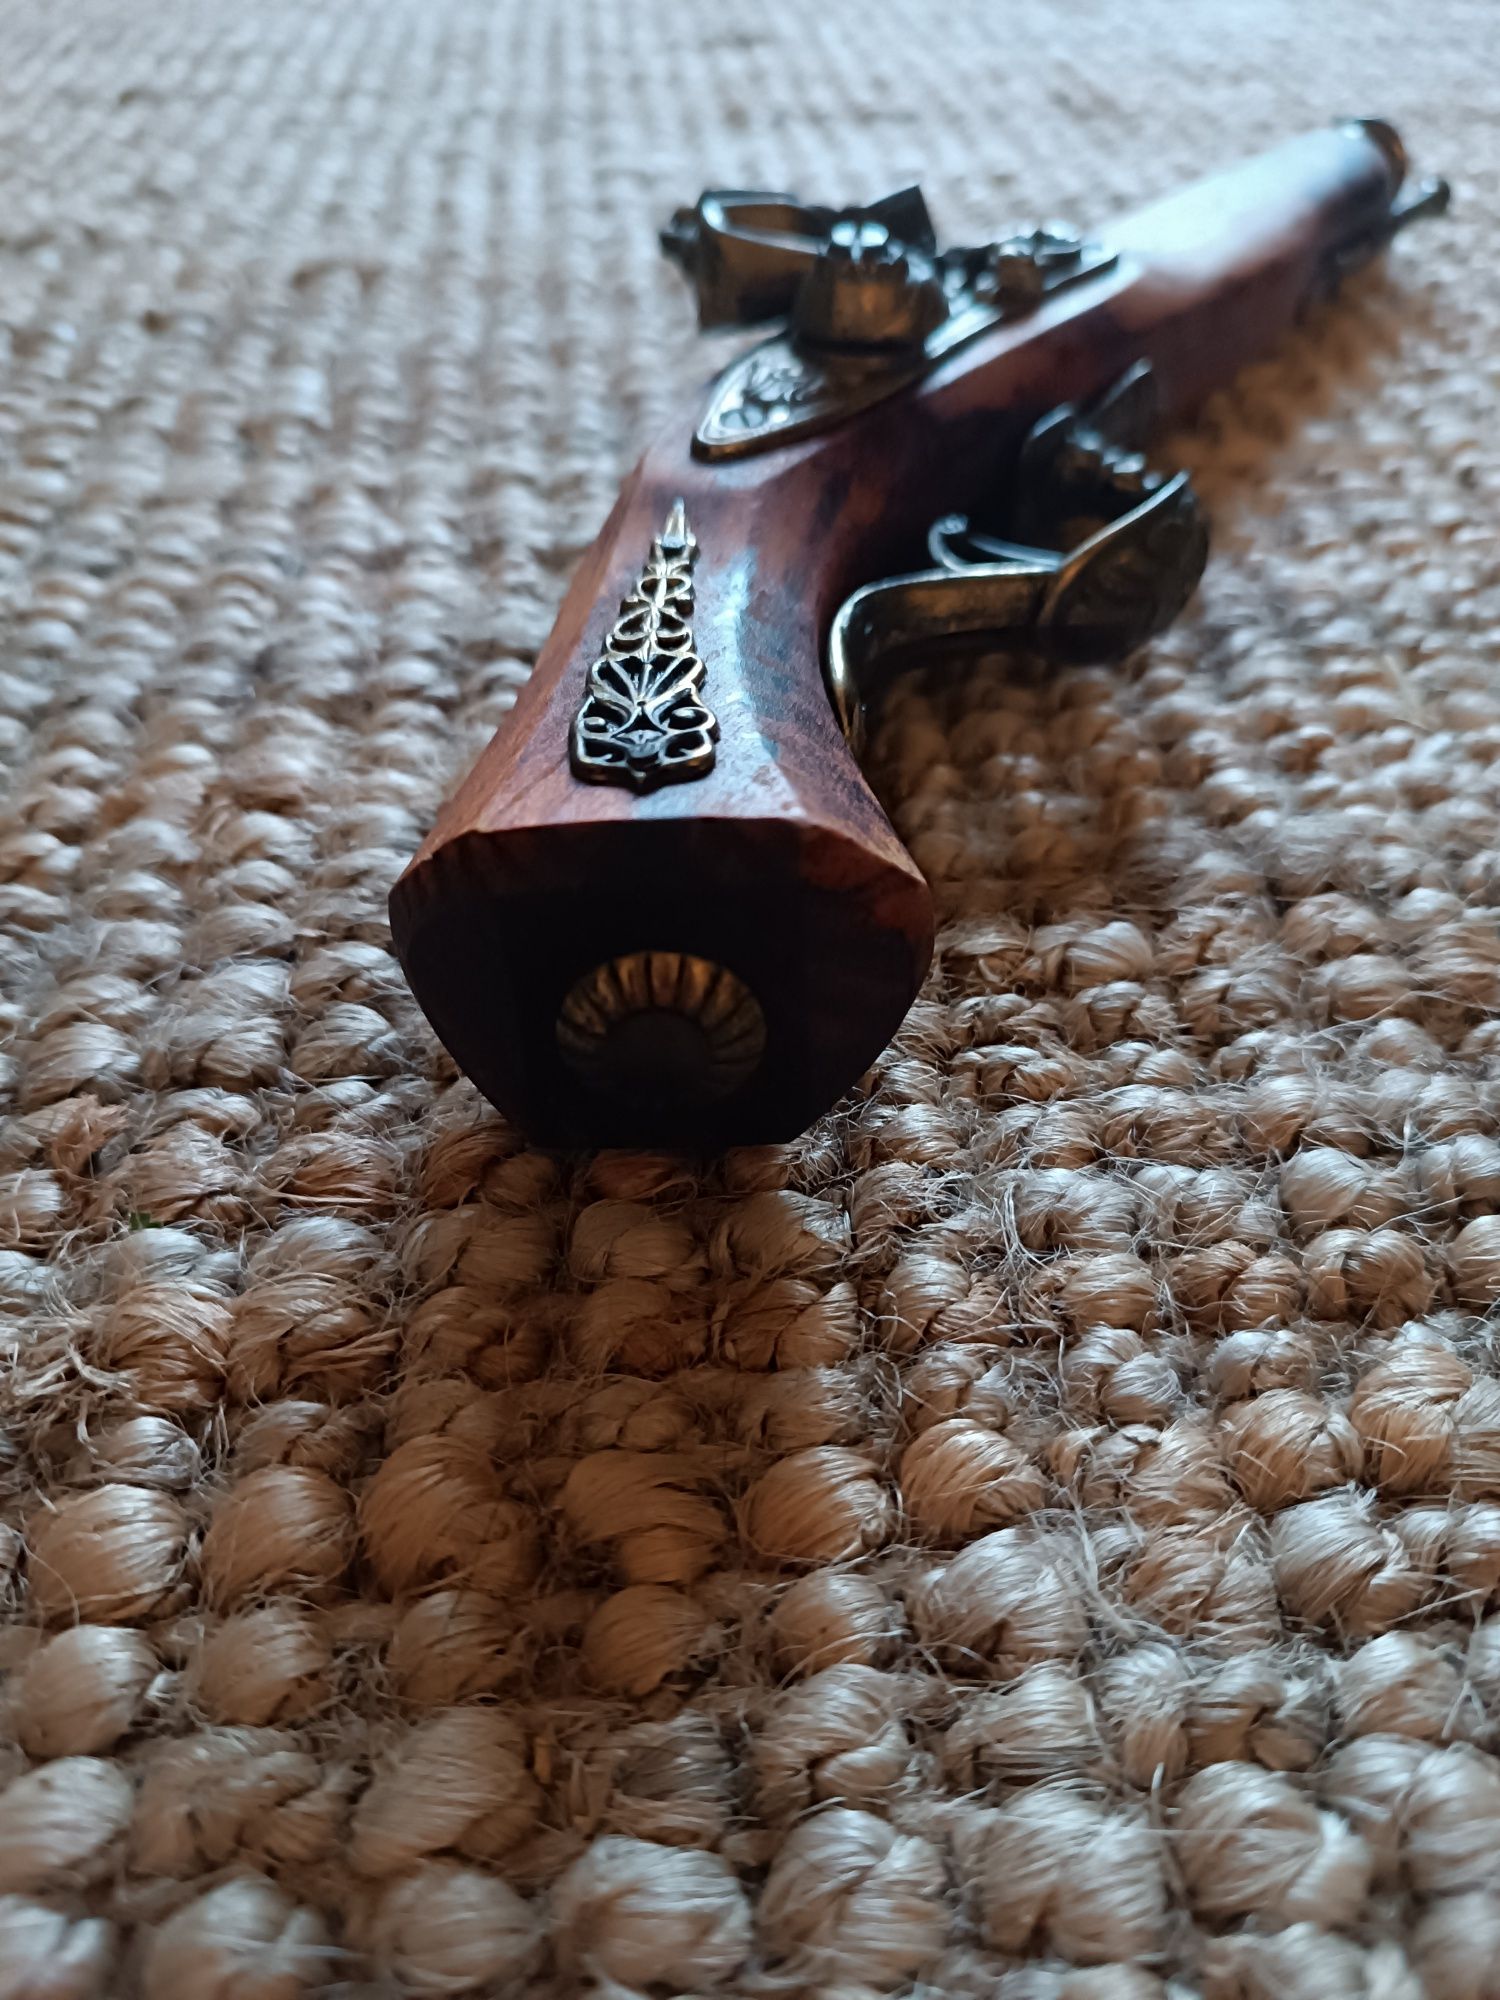 Pistola antiga de madeira